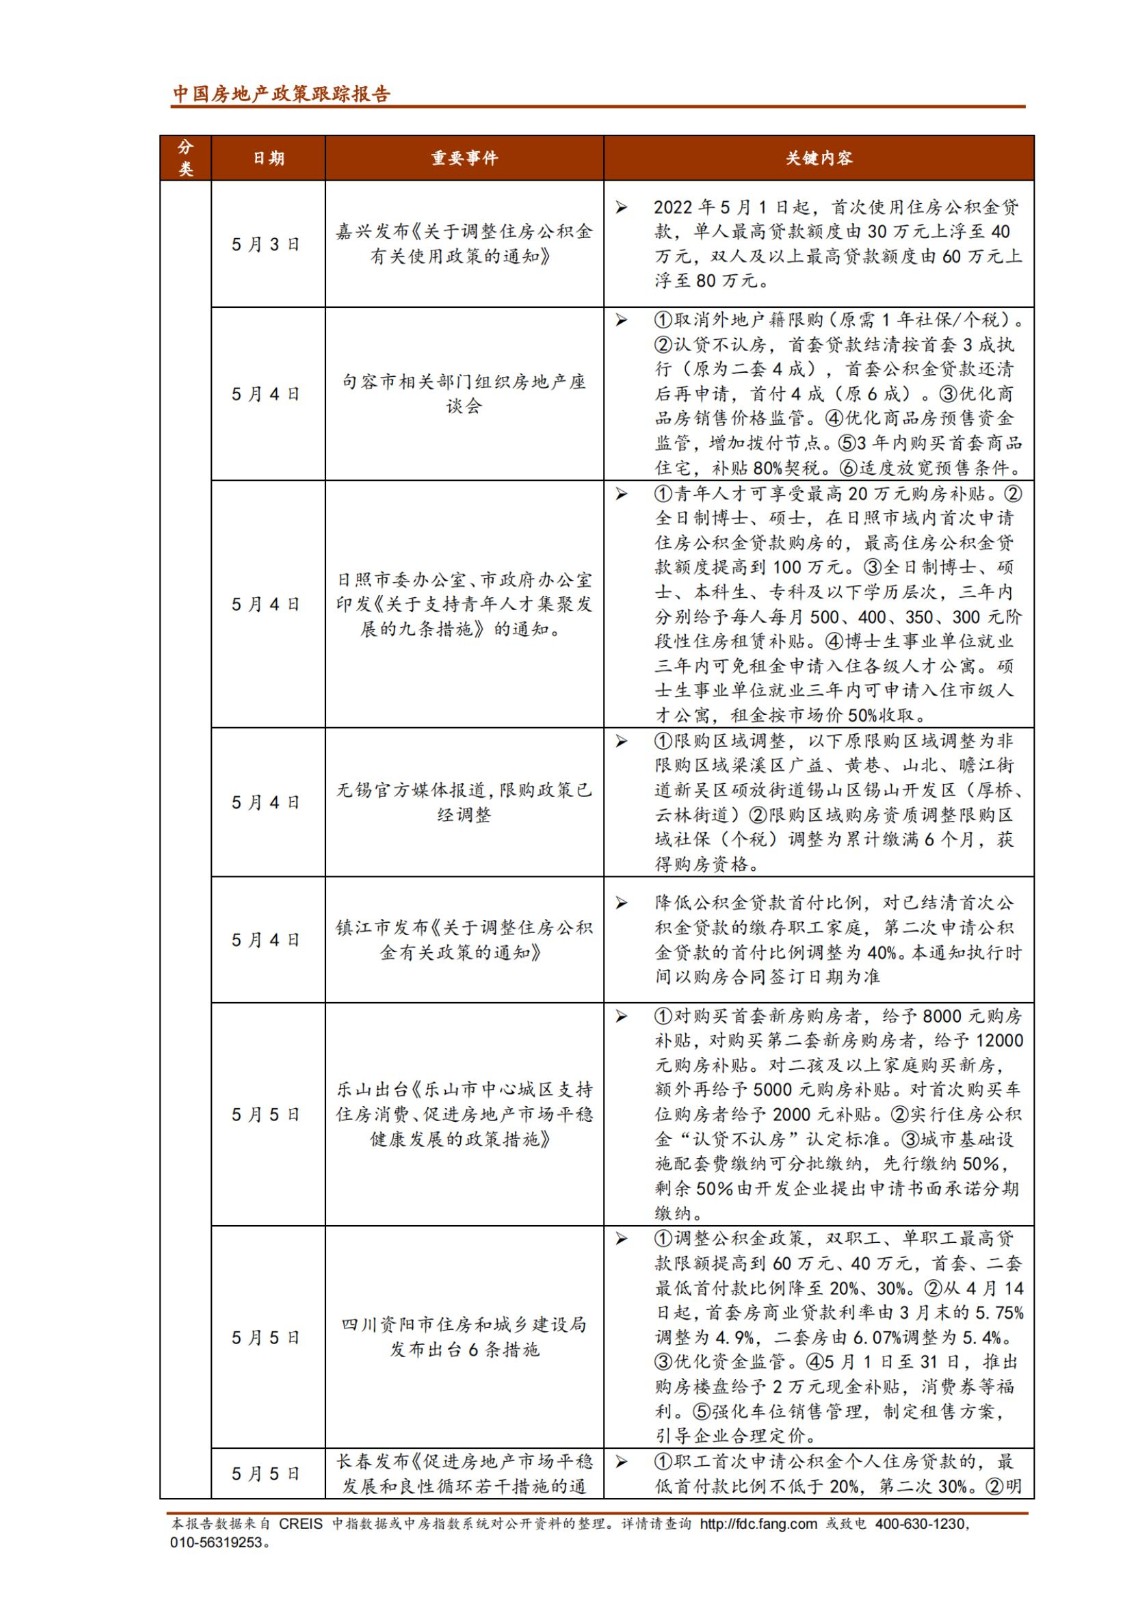 《中指丨中国房地产政策跟踪报告（2022年5月）》_纯图版_04.jpg